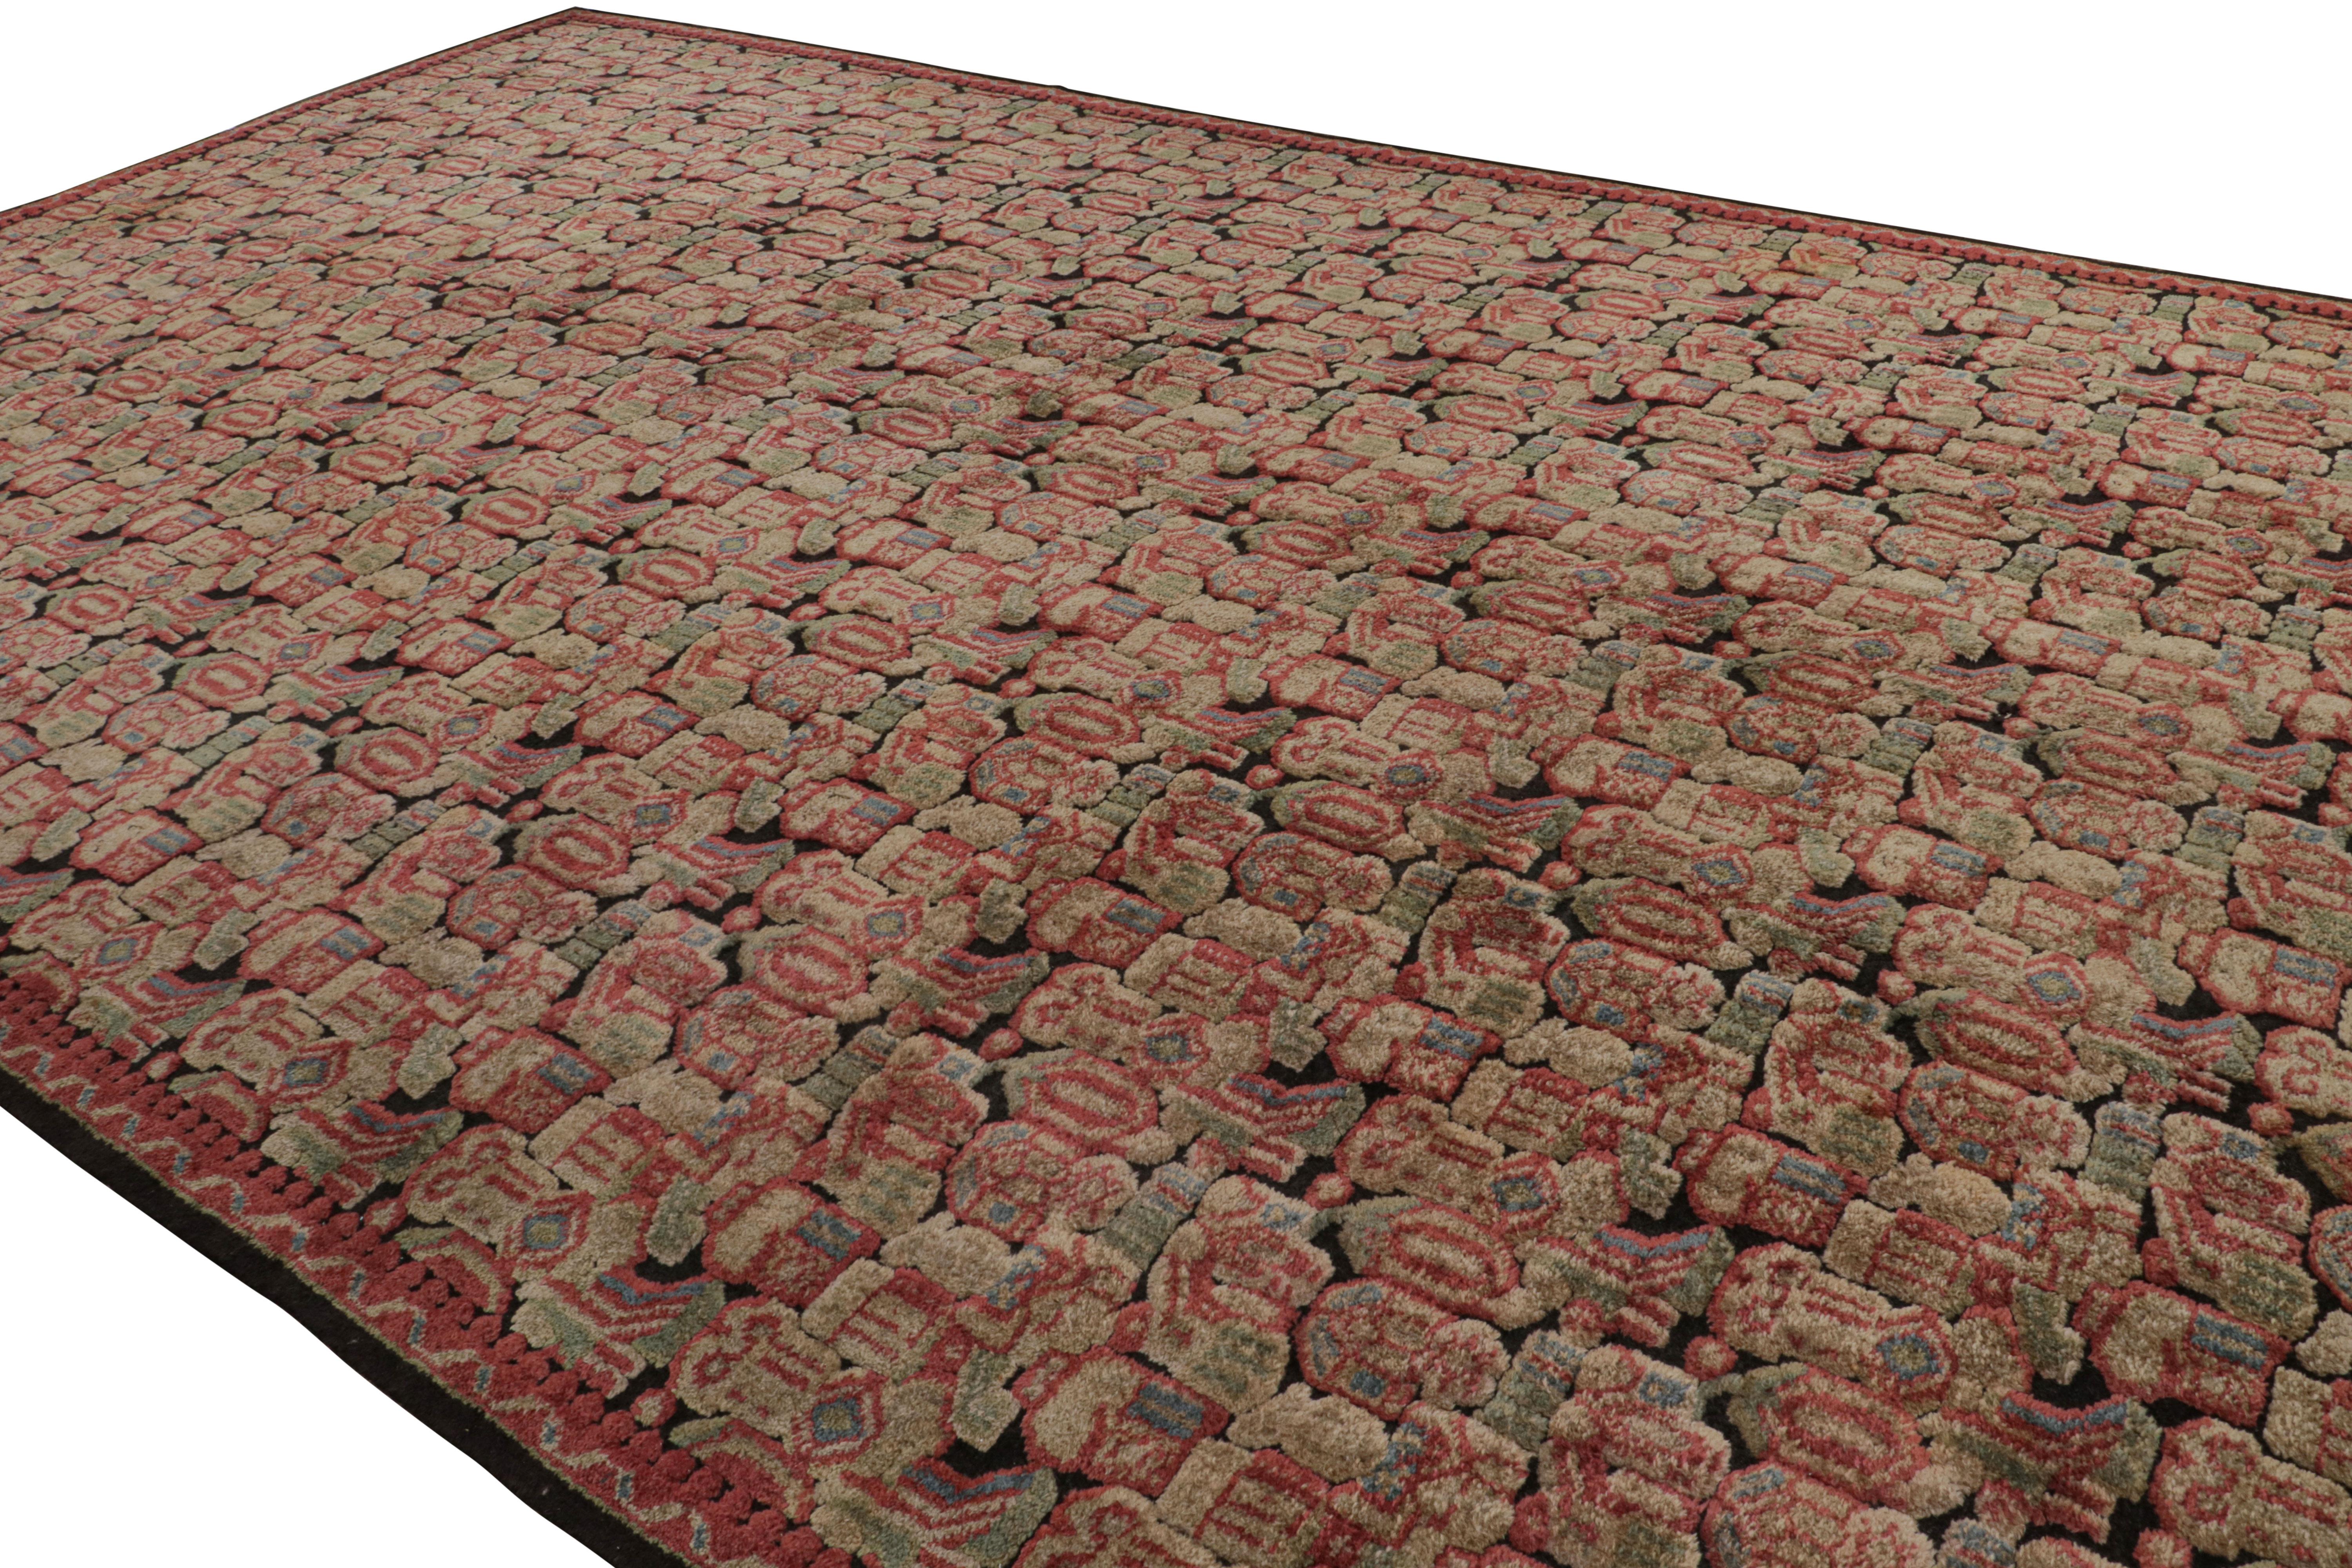 Noué à la main en laine, un ancien tapis Axminster 12x20 surdimensionné originaire d'Angleterre vers 1920-1930 - qui rejoint maintenant notre collection d'antiquités.

Sur le Design :

La pièce présente des tons beige-brun, rouge et vert soulignant